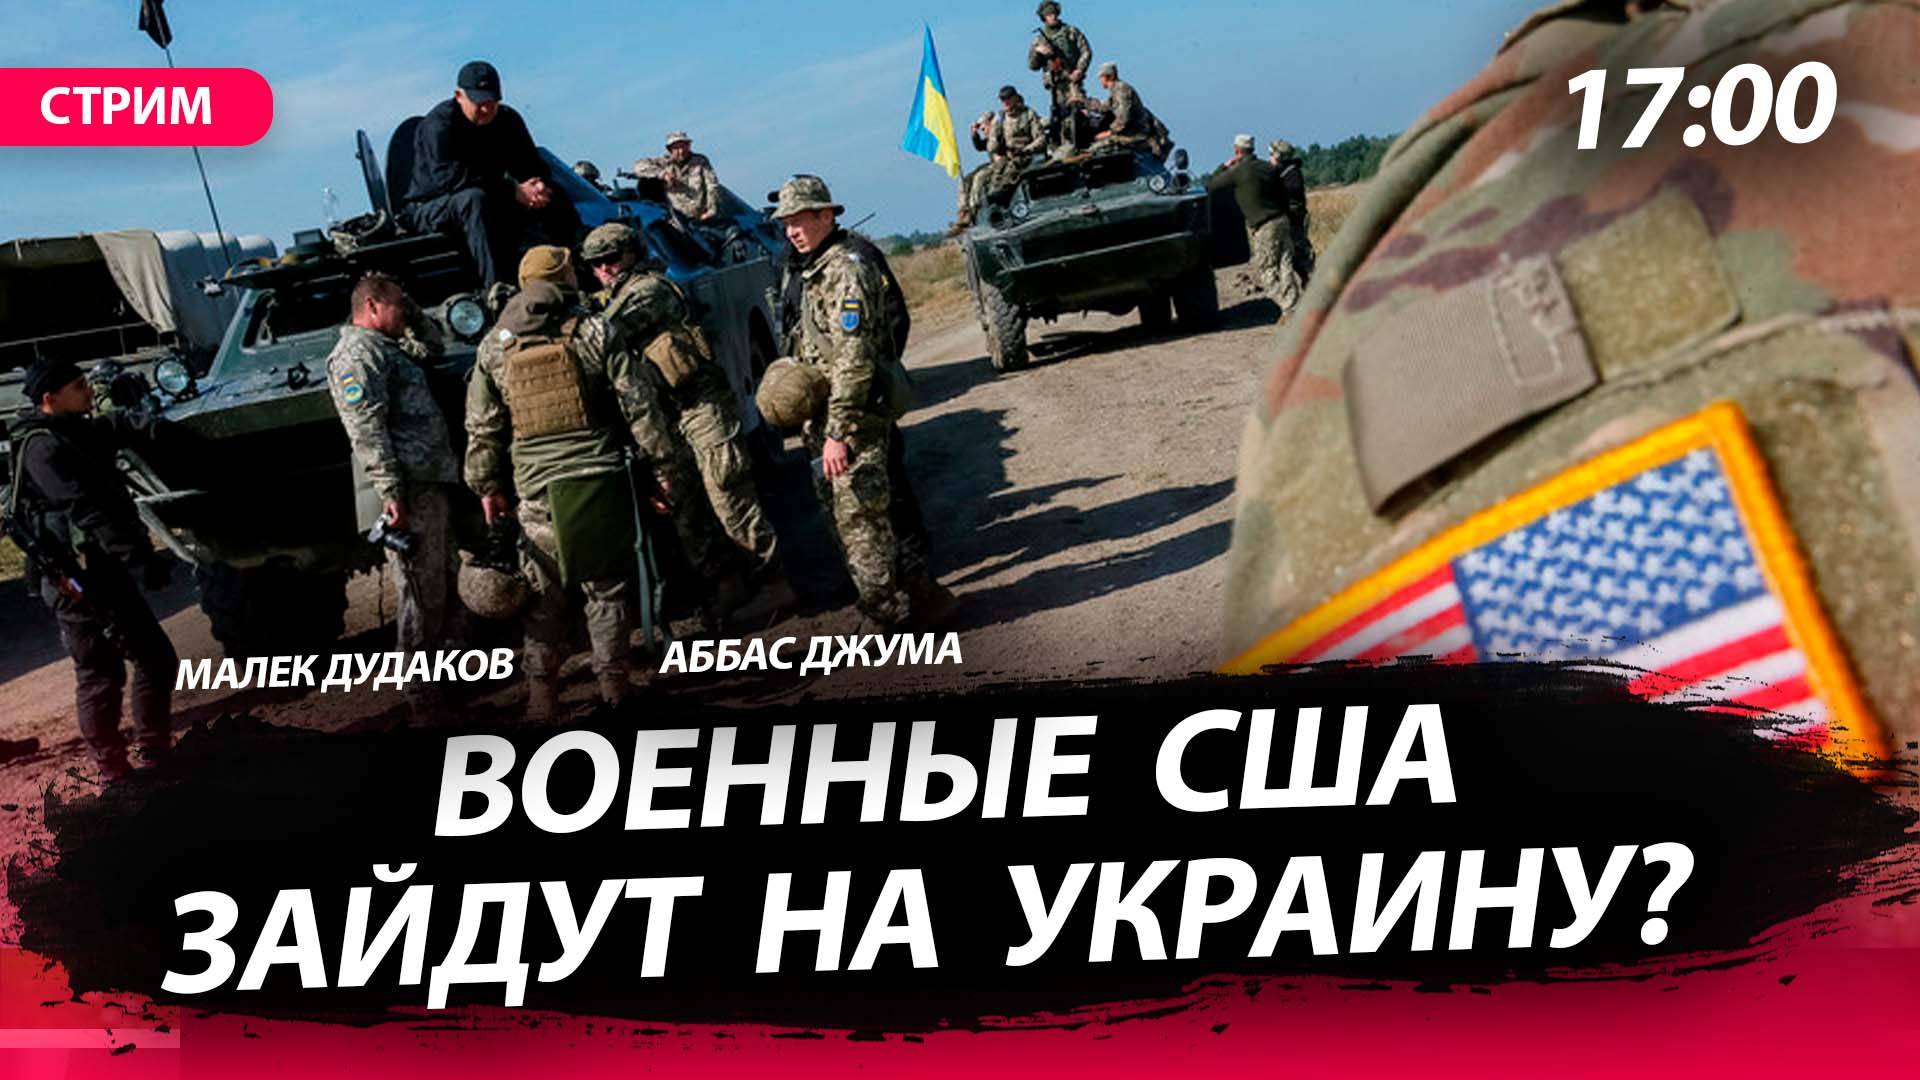 Военные США зайдут на Украину? [Аббас Джума и Малек Дудаков. СТРИМ]